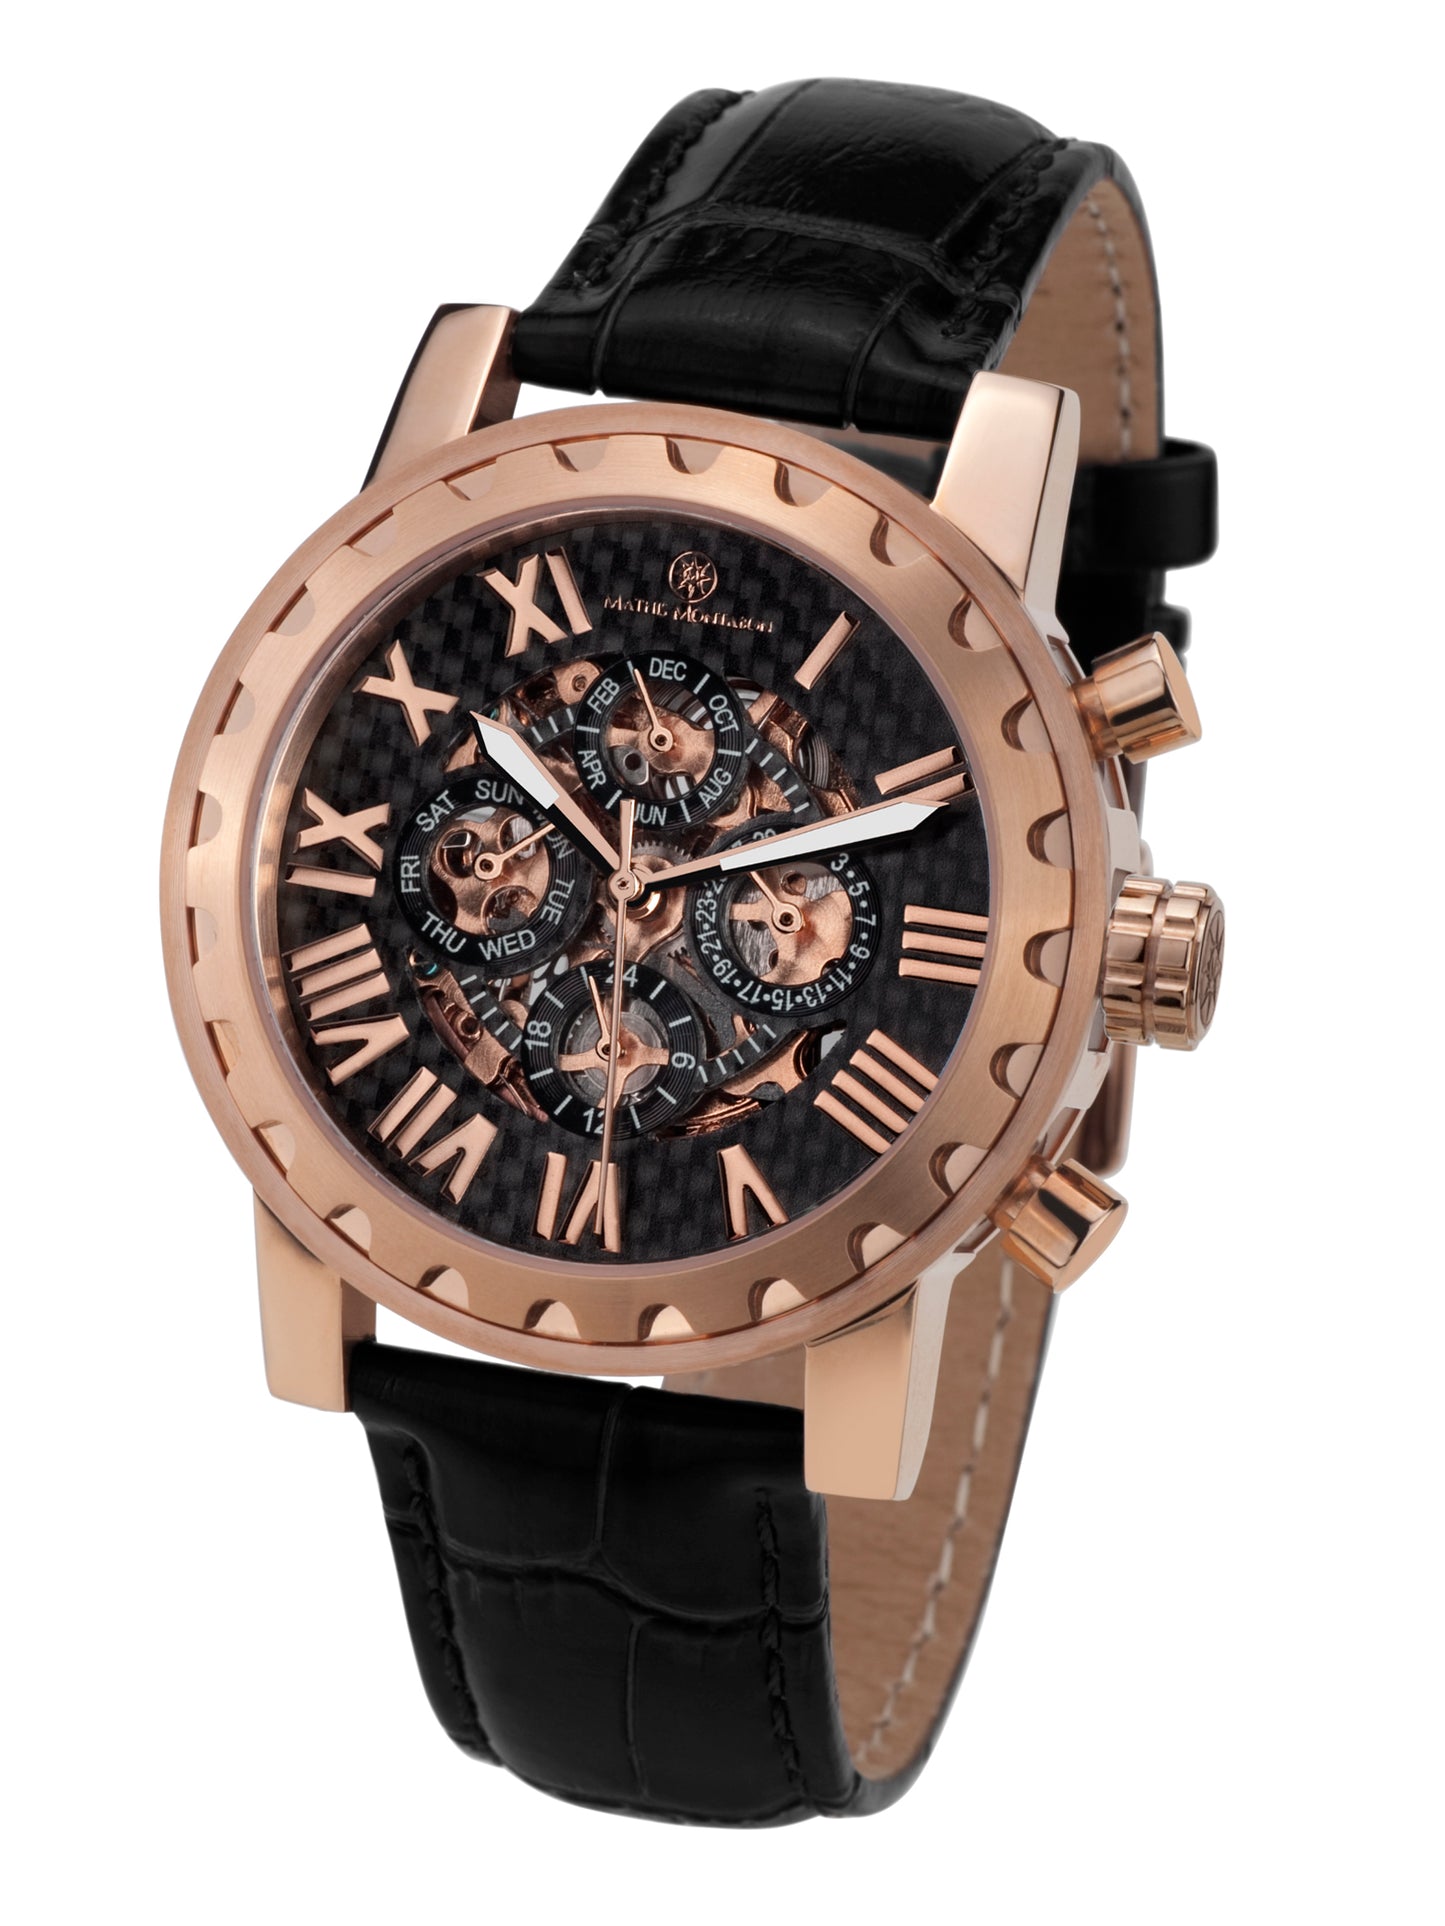 Automatic watches — Squelette — Mathis Montabon — roségold schwarz